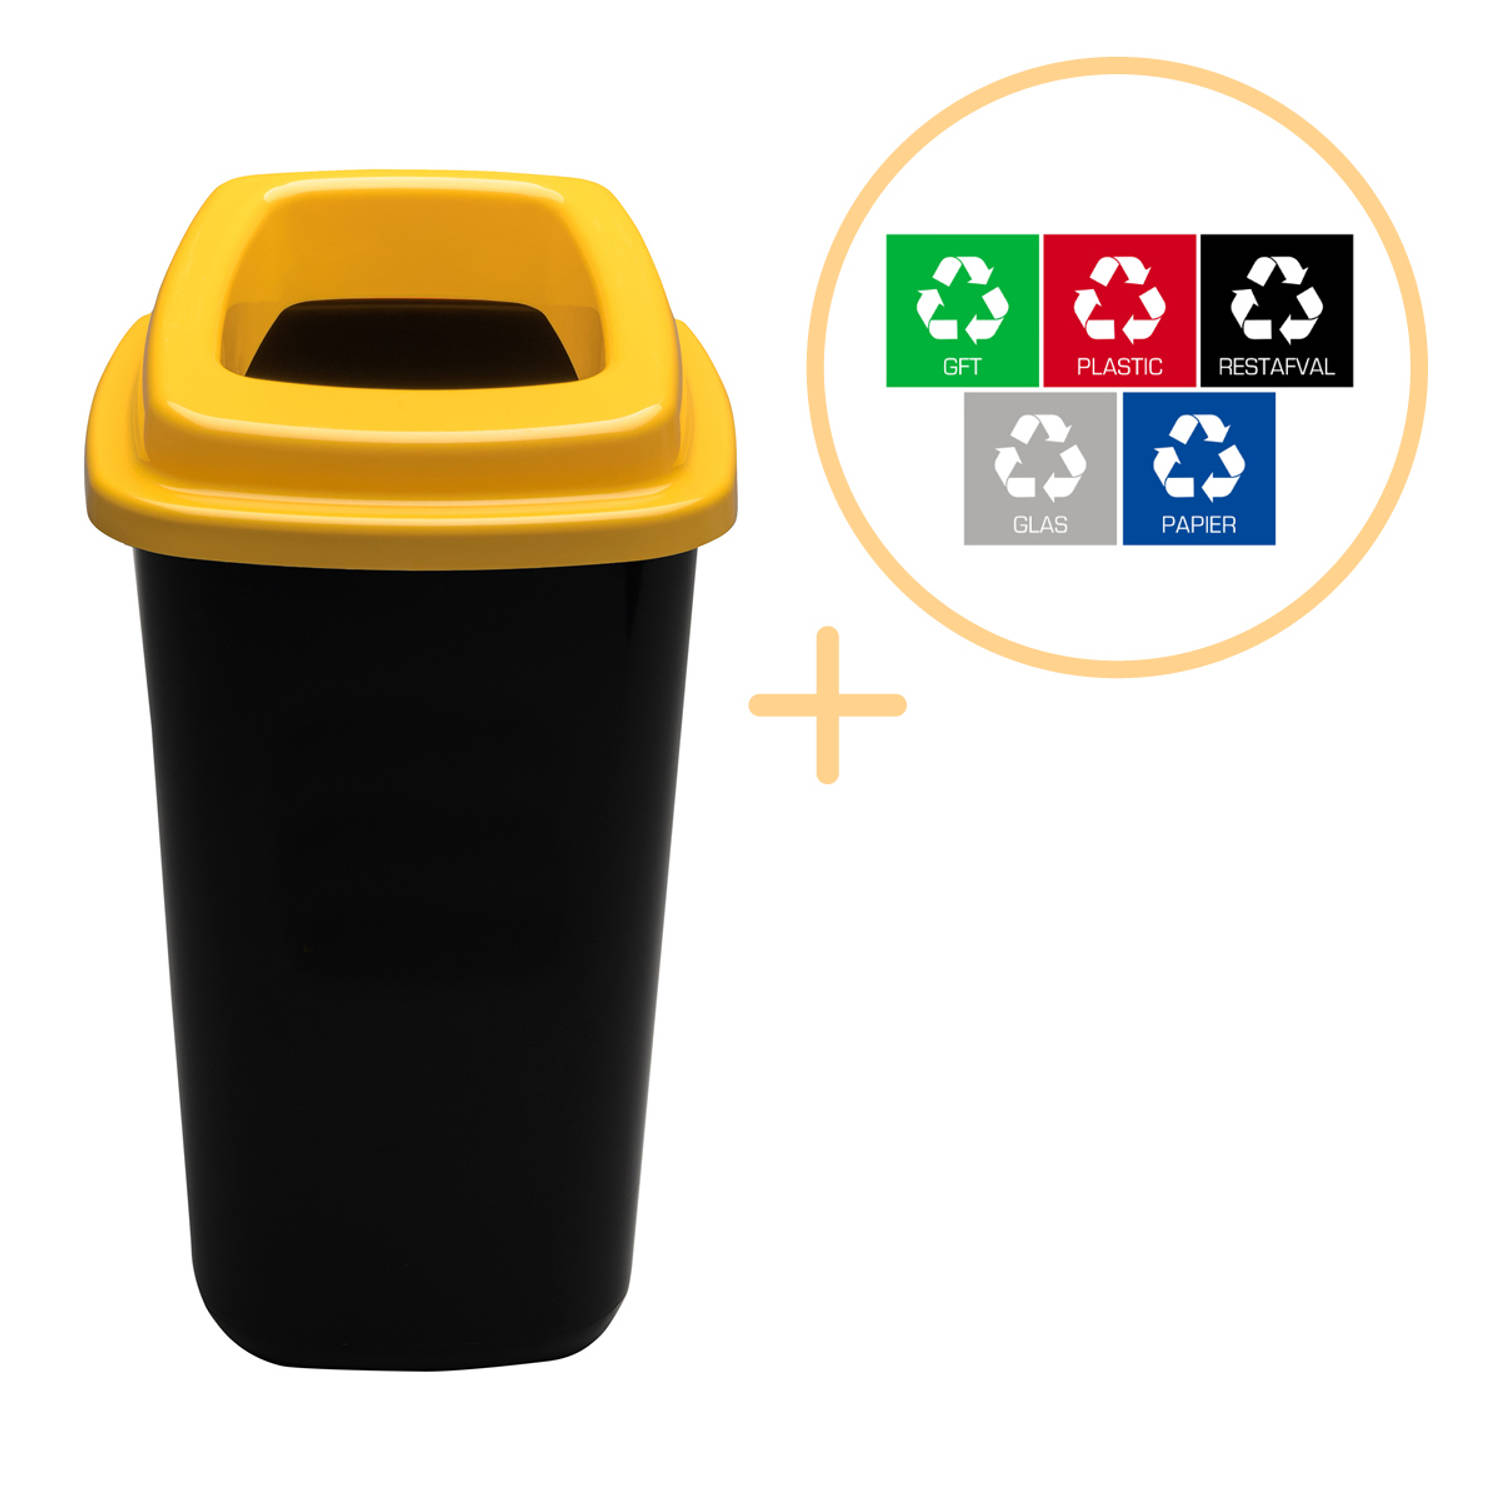 Plafor Sort Bin, Prullenbak voor afvalscheiding - 45L – Zwart/Geel - Inclusief 5-delige Stickerset - Afvalbak voor gemakkelijk Afval Scheiden en Recycling - Afvalemmer - Vuilnisbak